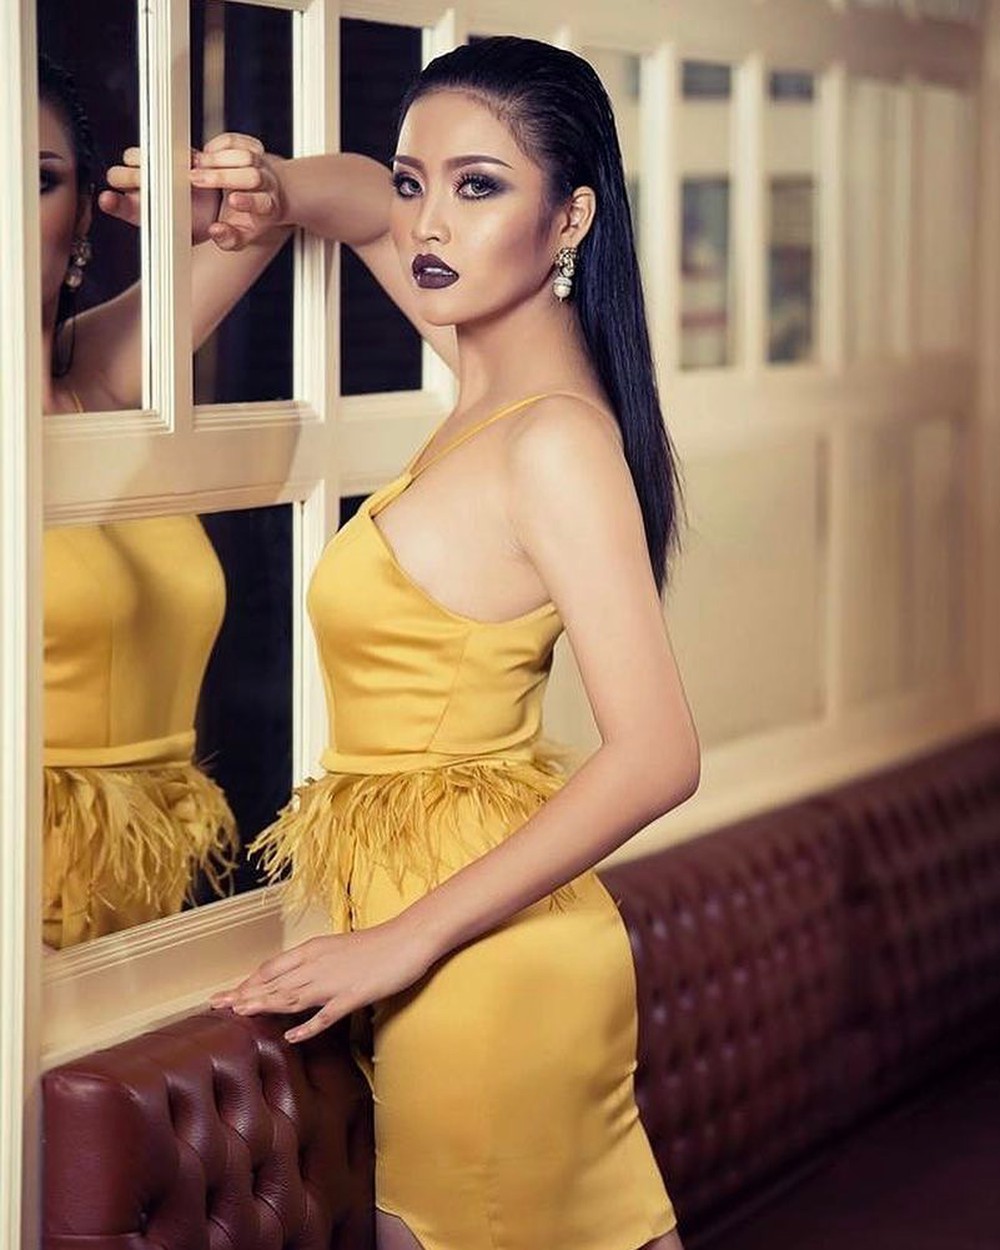 Hoa hậu Quốc tế Hòa bình tại VN: Ngỡ ngàng nhan sắc đẹp tựa minh tinh của Hoa hậu Lào - Ảnh 5.